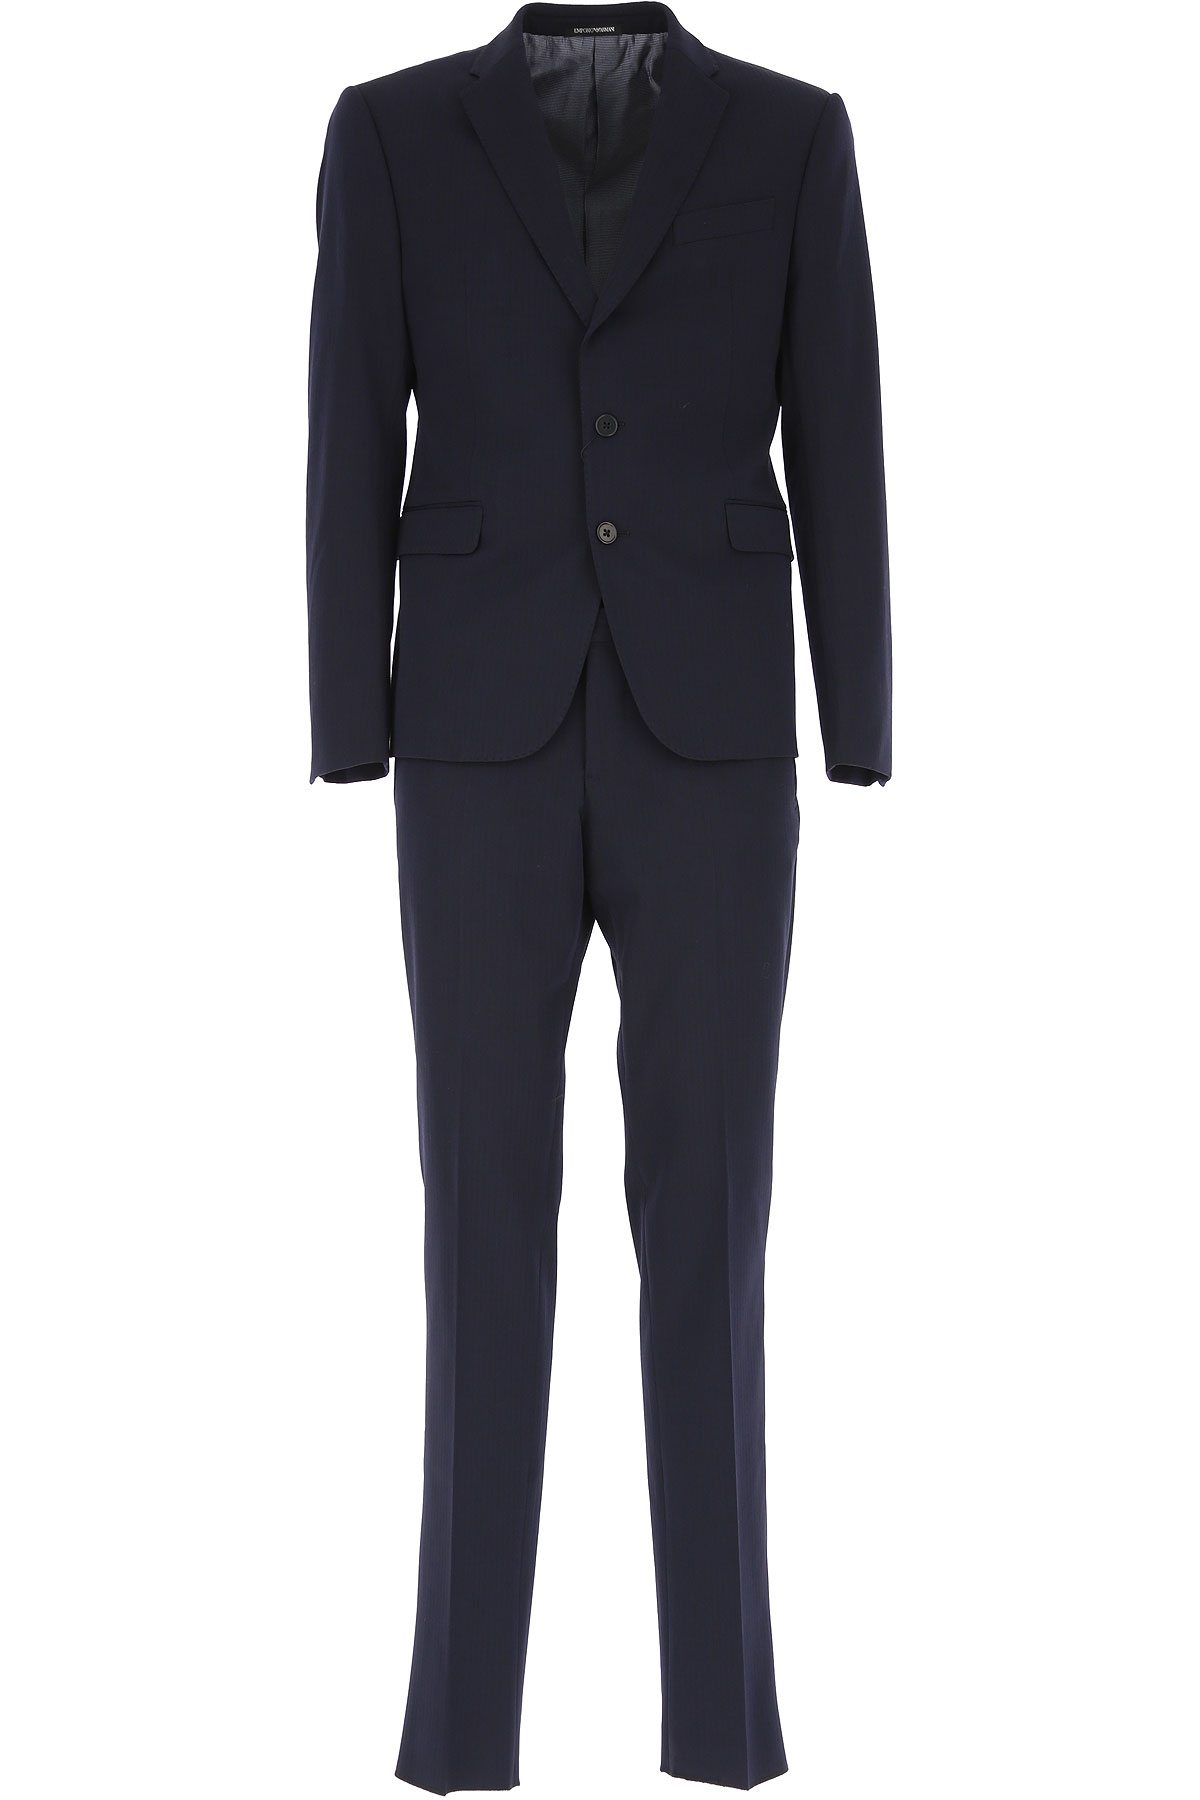 Emporio Armani Anzug für Herren Günstig im Sale, dunkel Mitternachtblauu, Extrafeine Merino Wolle, 2017, L M XL